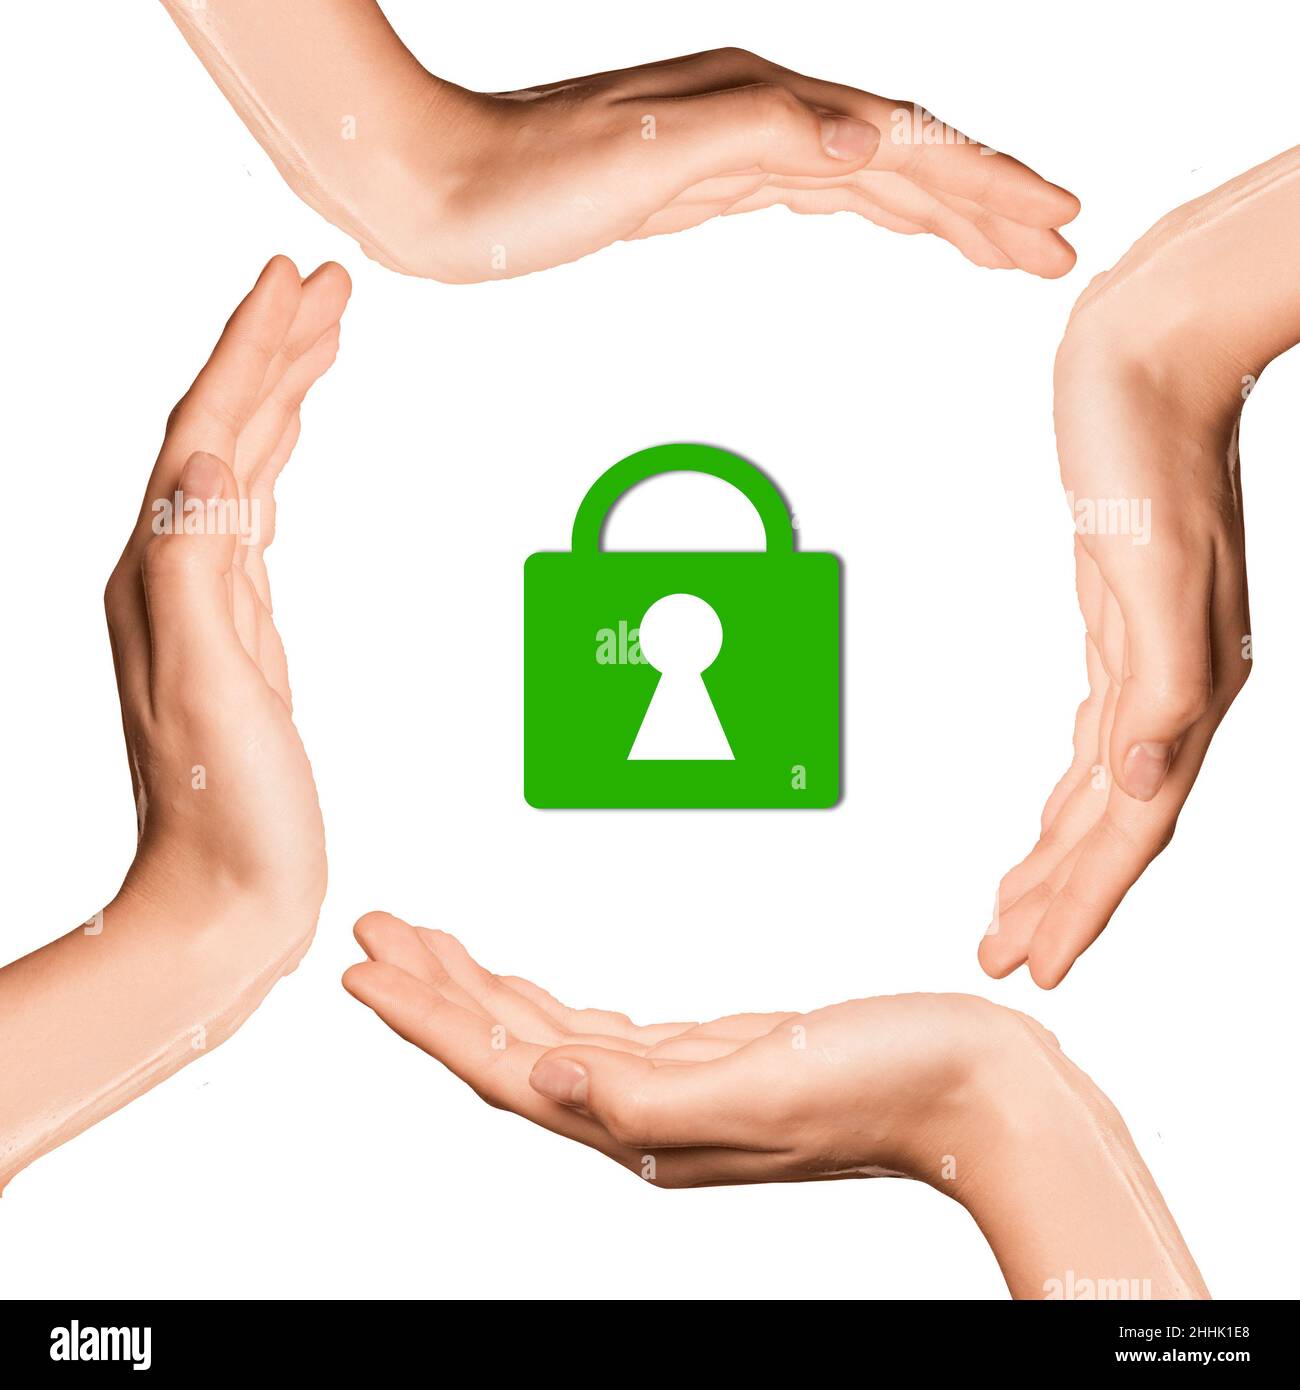 Quatre mains formant un cercle autour d'une icône de verrou, symbolisant la sécurité ou la sécurité de l'information. Banque D'Images